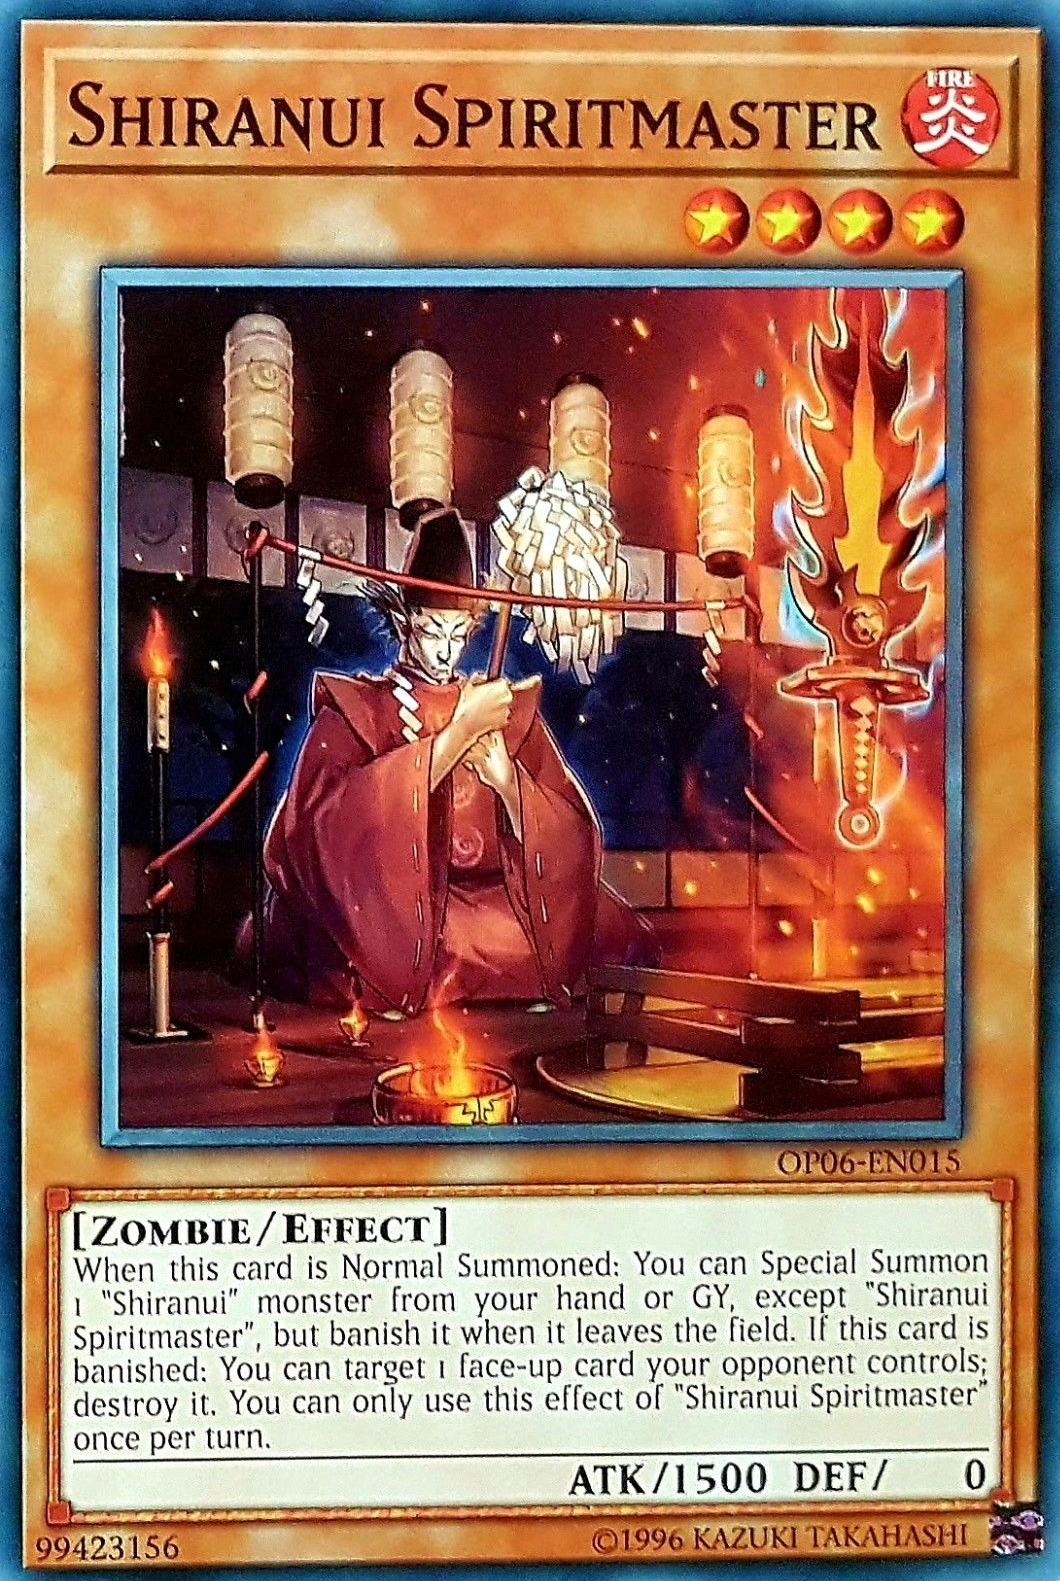 Shiranui Spiritmaster [OP06-EN015] Common